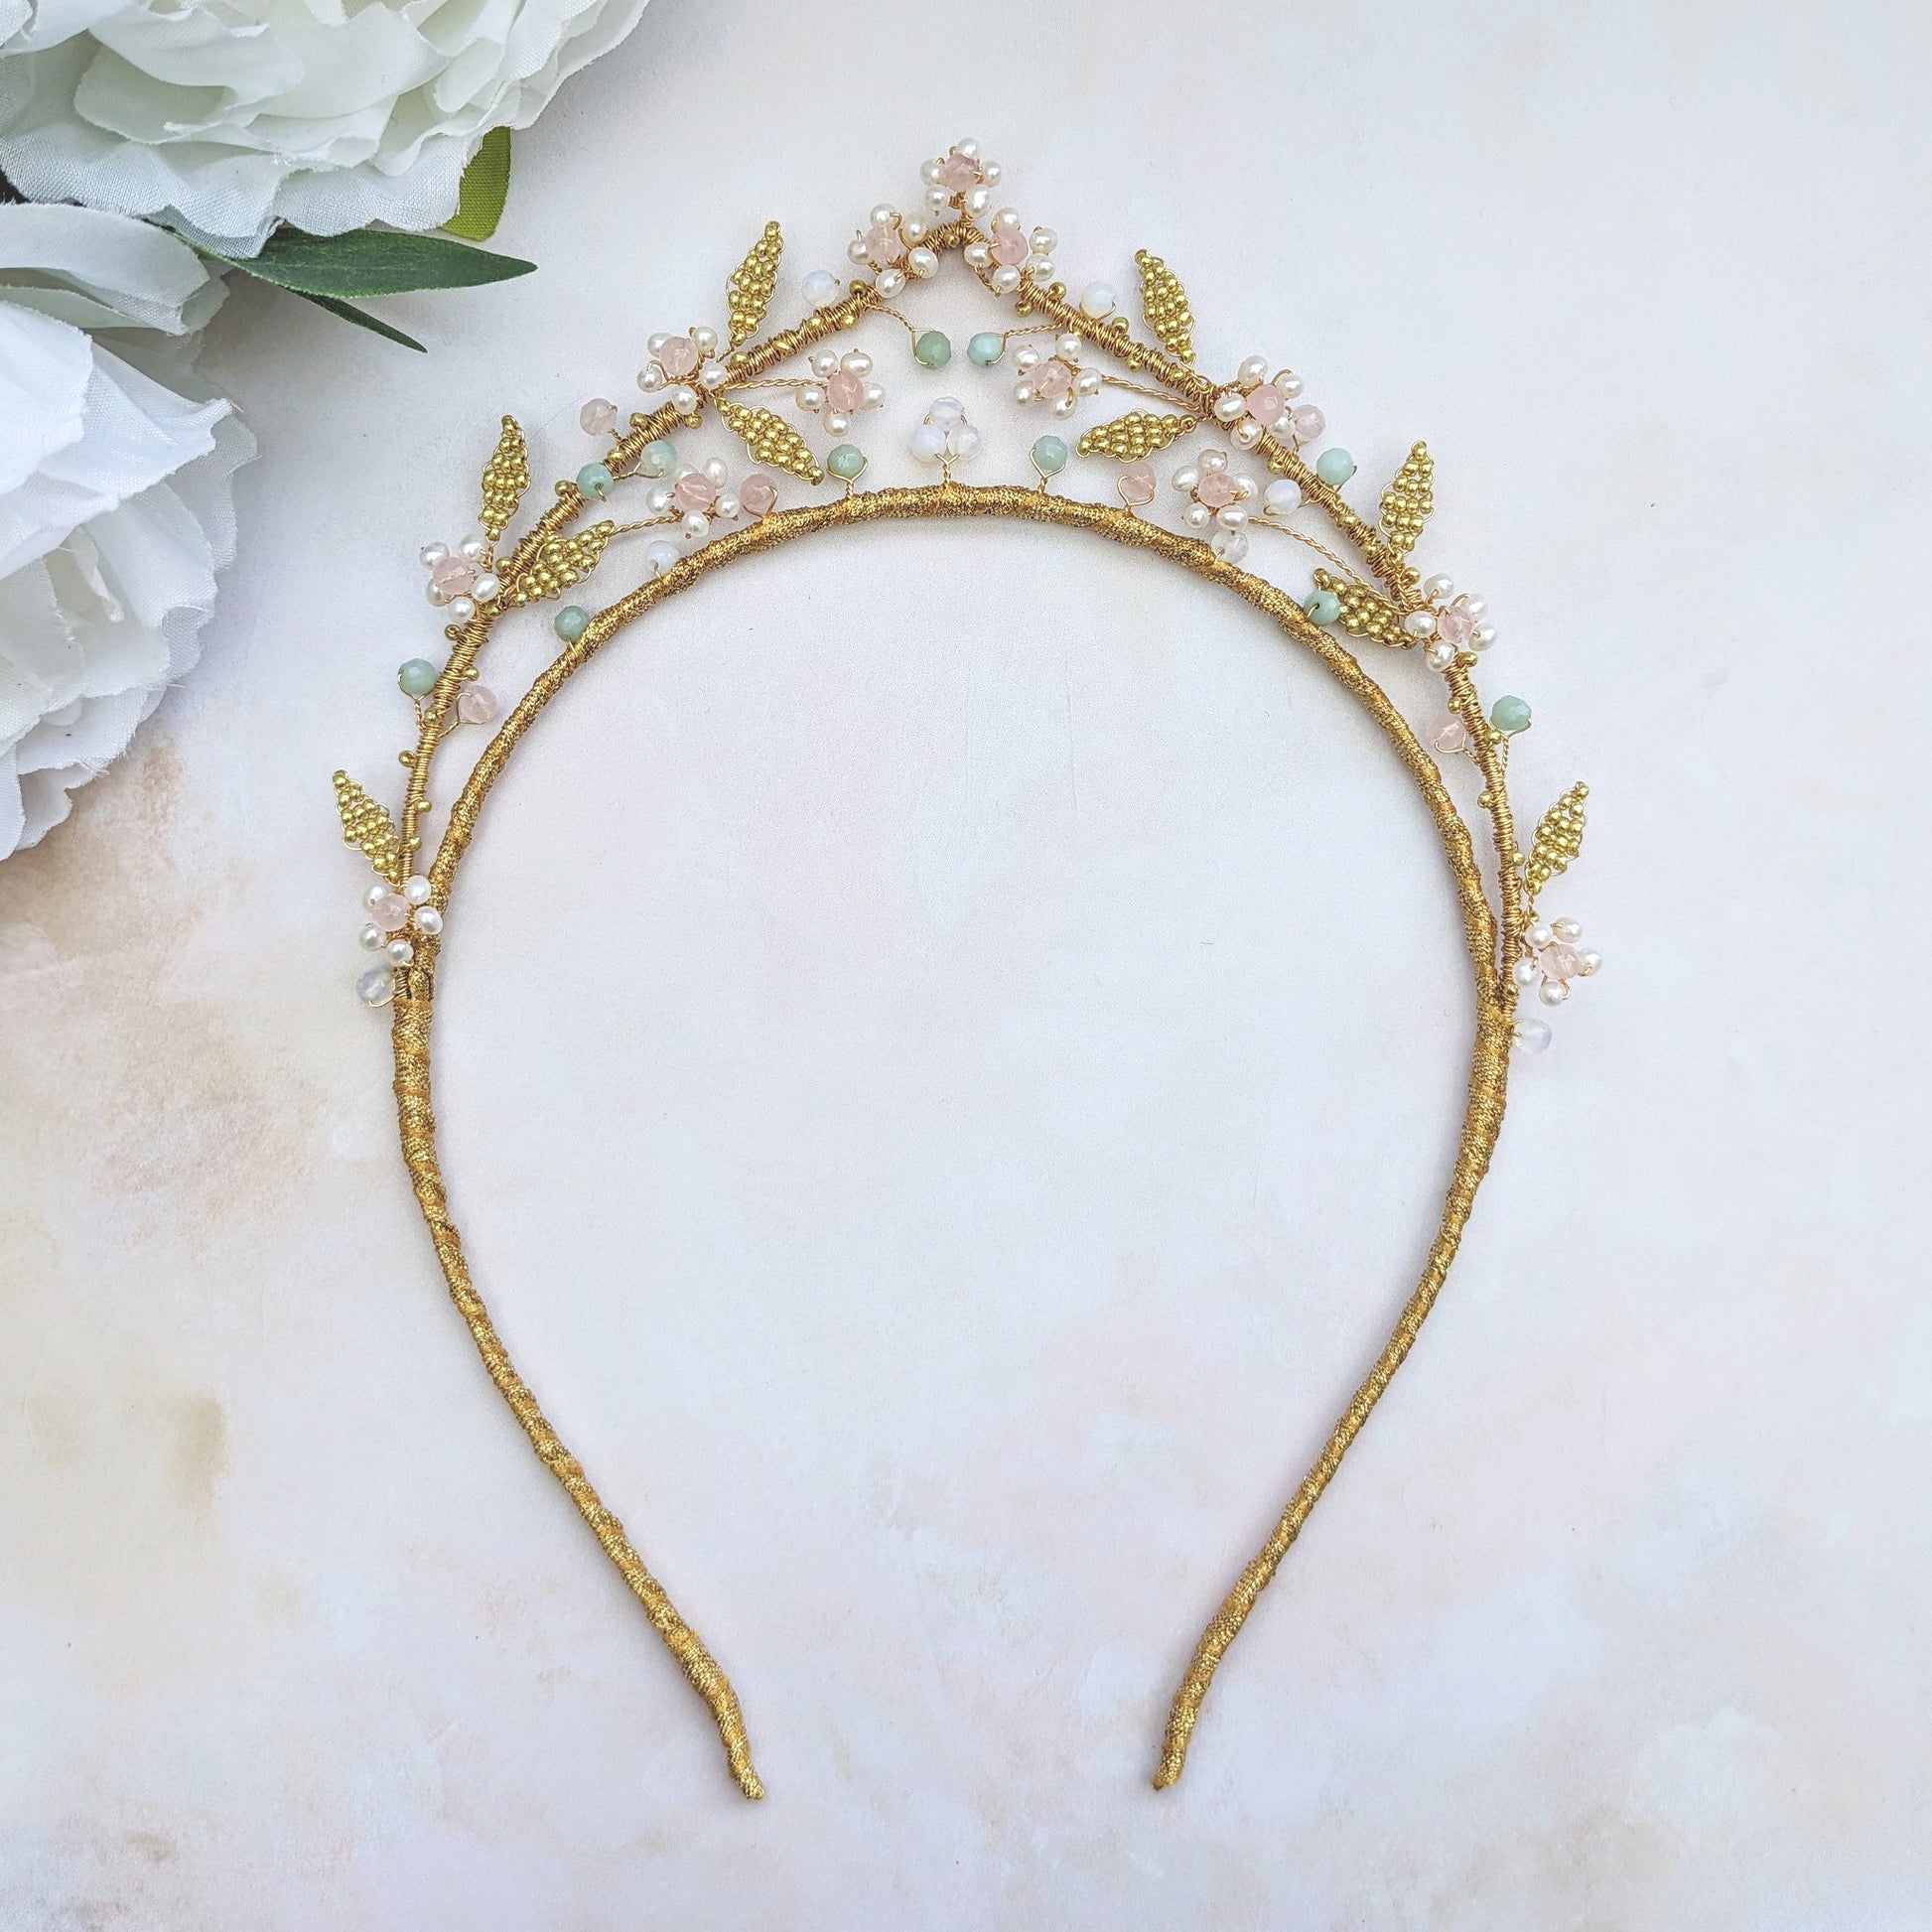 Nature inspired bridal crown - Susie Warner